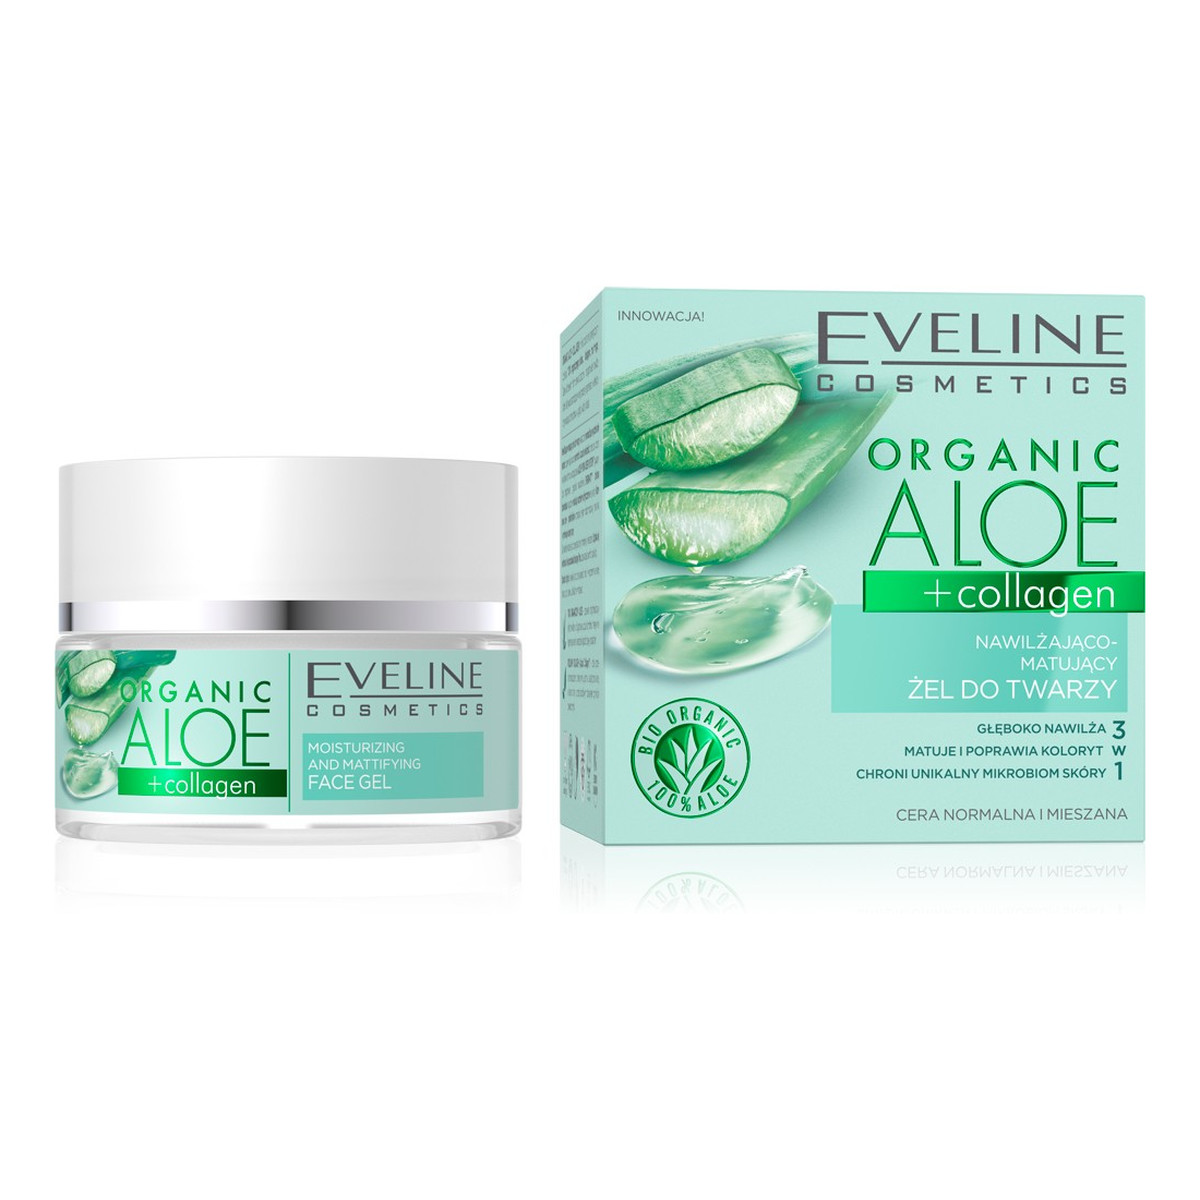 Eveline Organic Aloe + Collagen Nawilżająco - Matujący Żel do twarzy 3w1 - cera normalna i mieszana 50ml